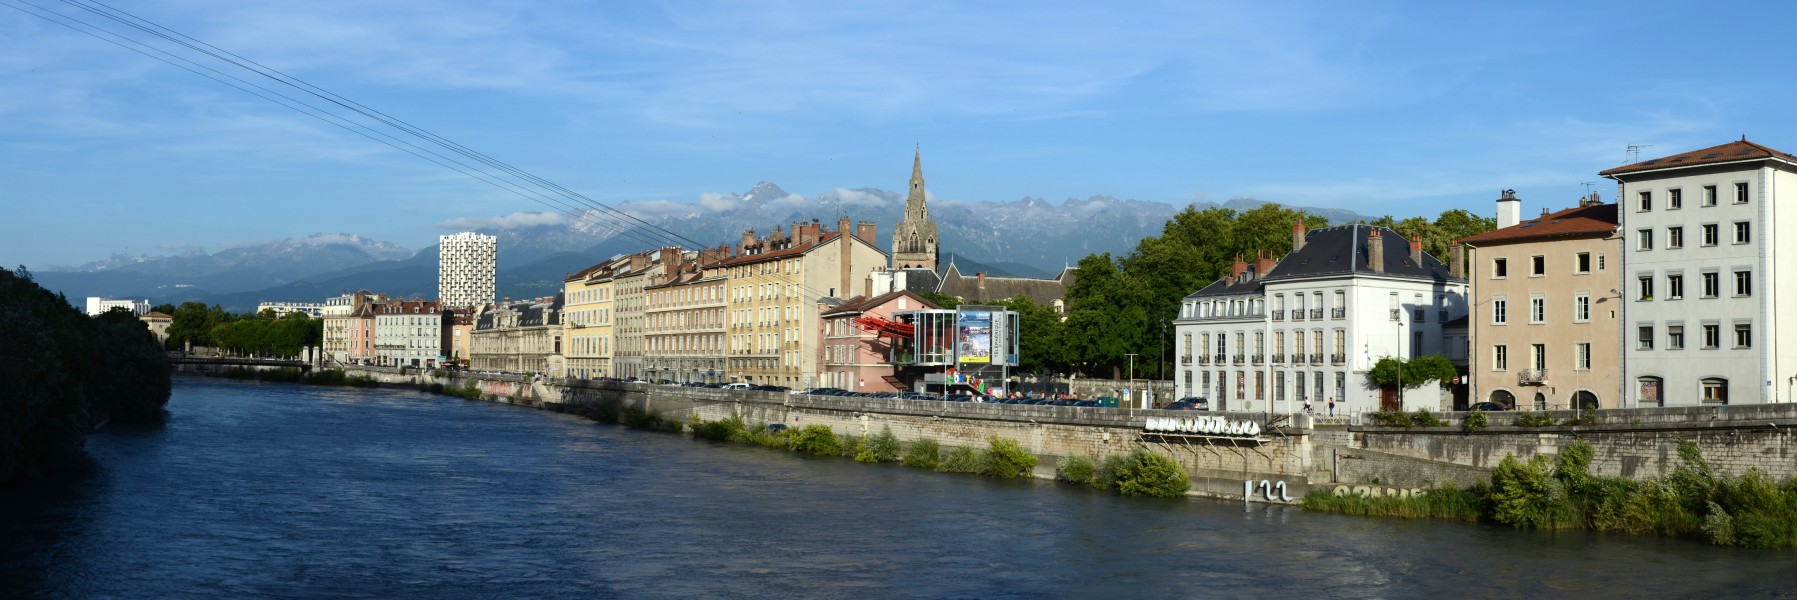 Grenoble panorama 2012